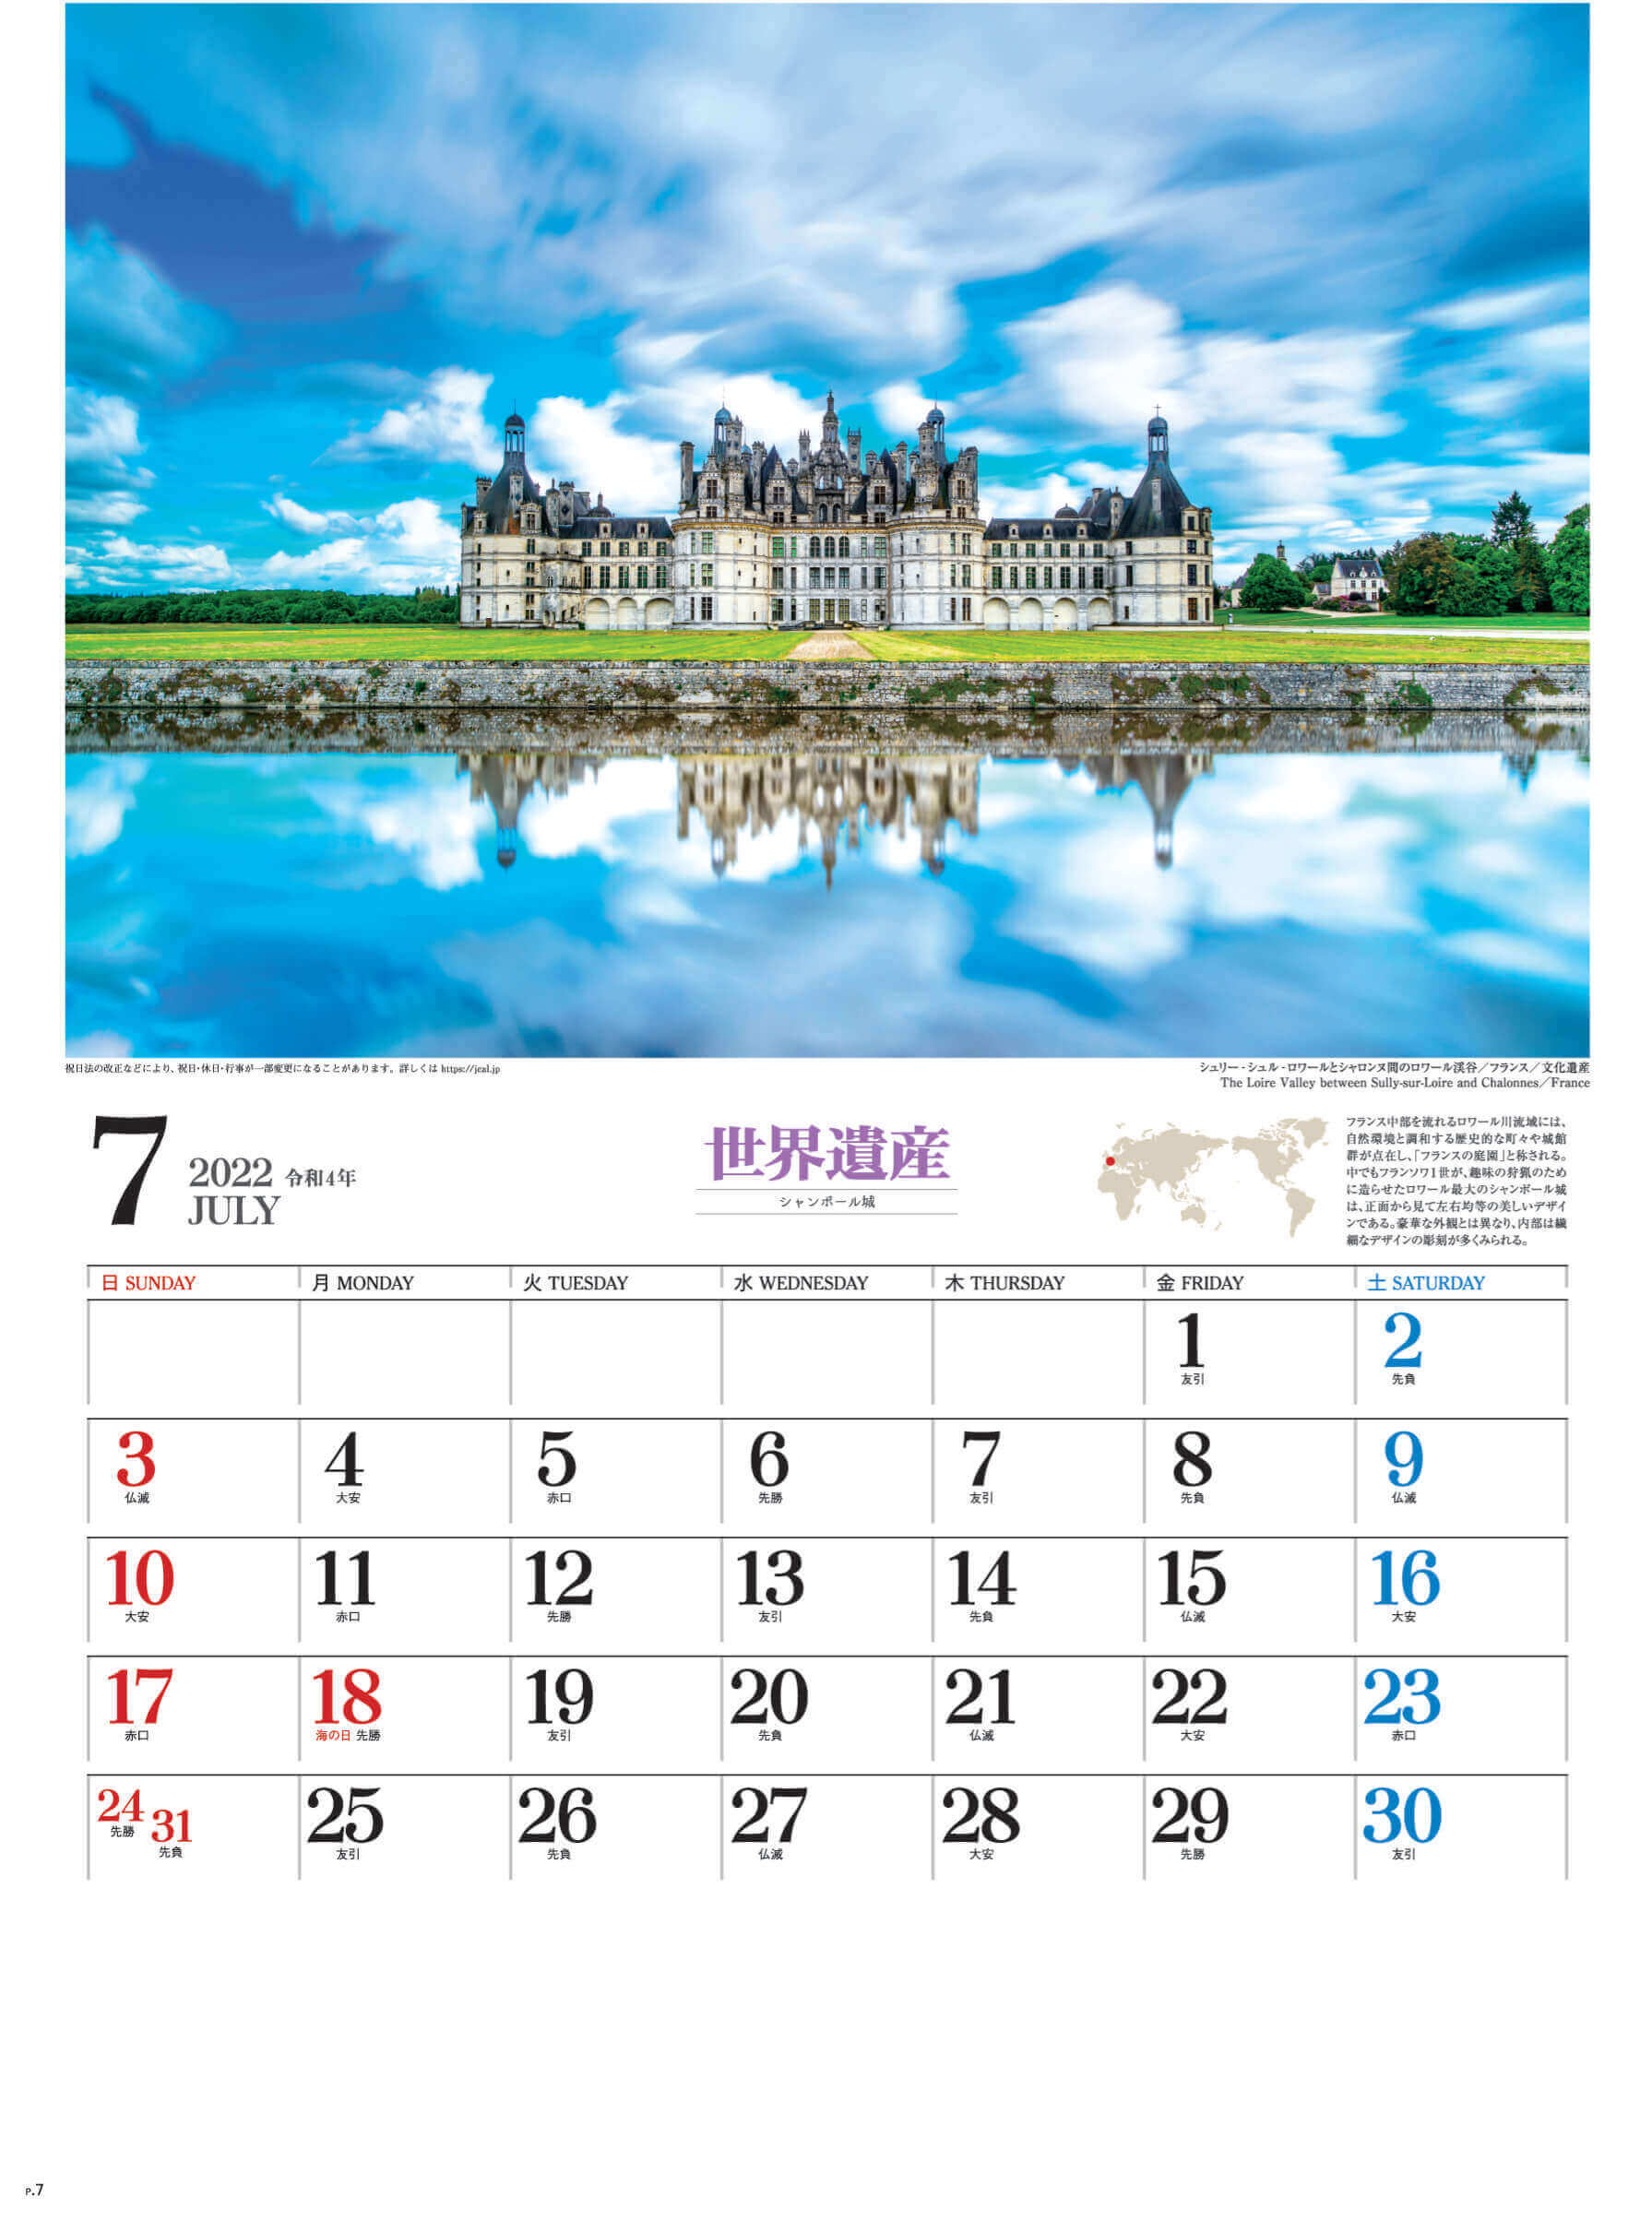 7月 シャンボール城 フランス ユネスコ世界遺産 2022年カレンダーの画像